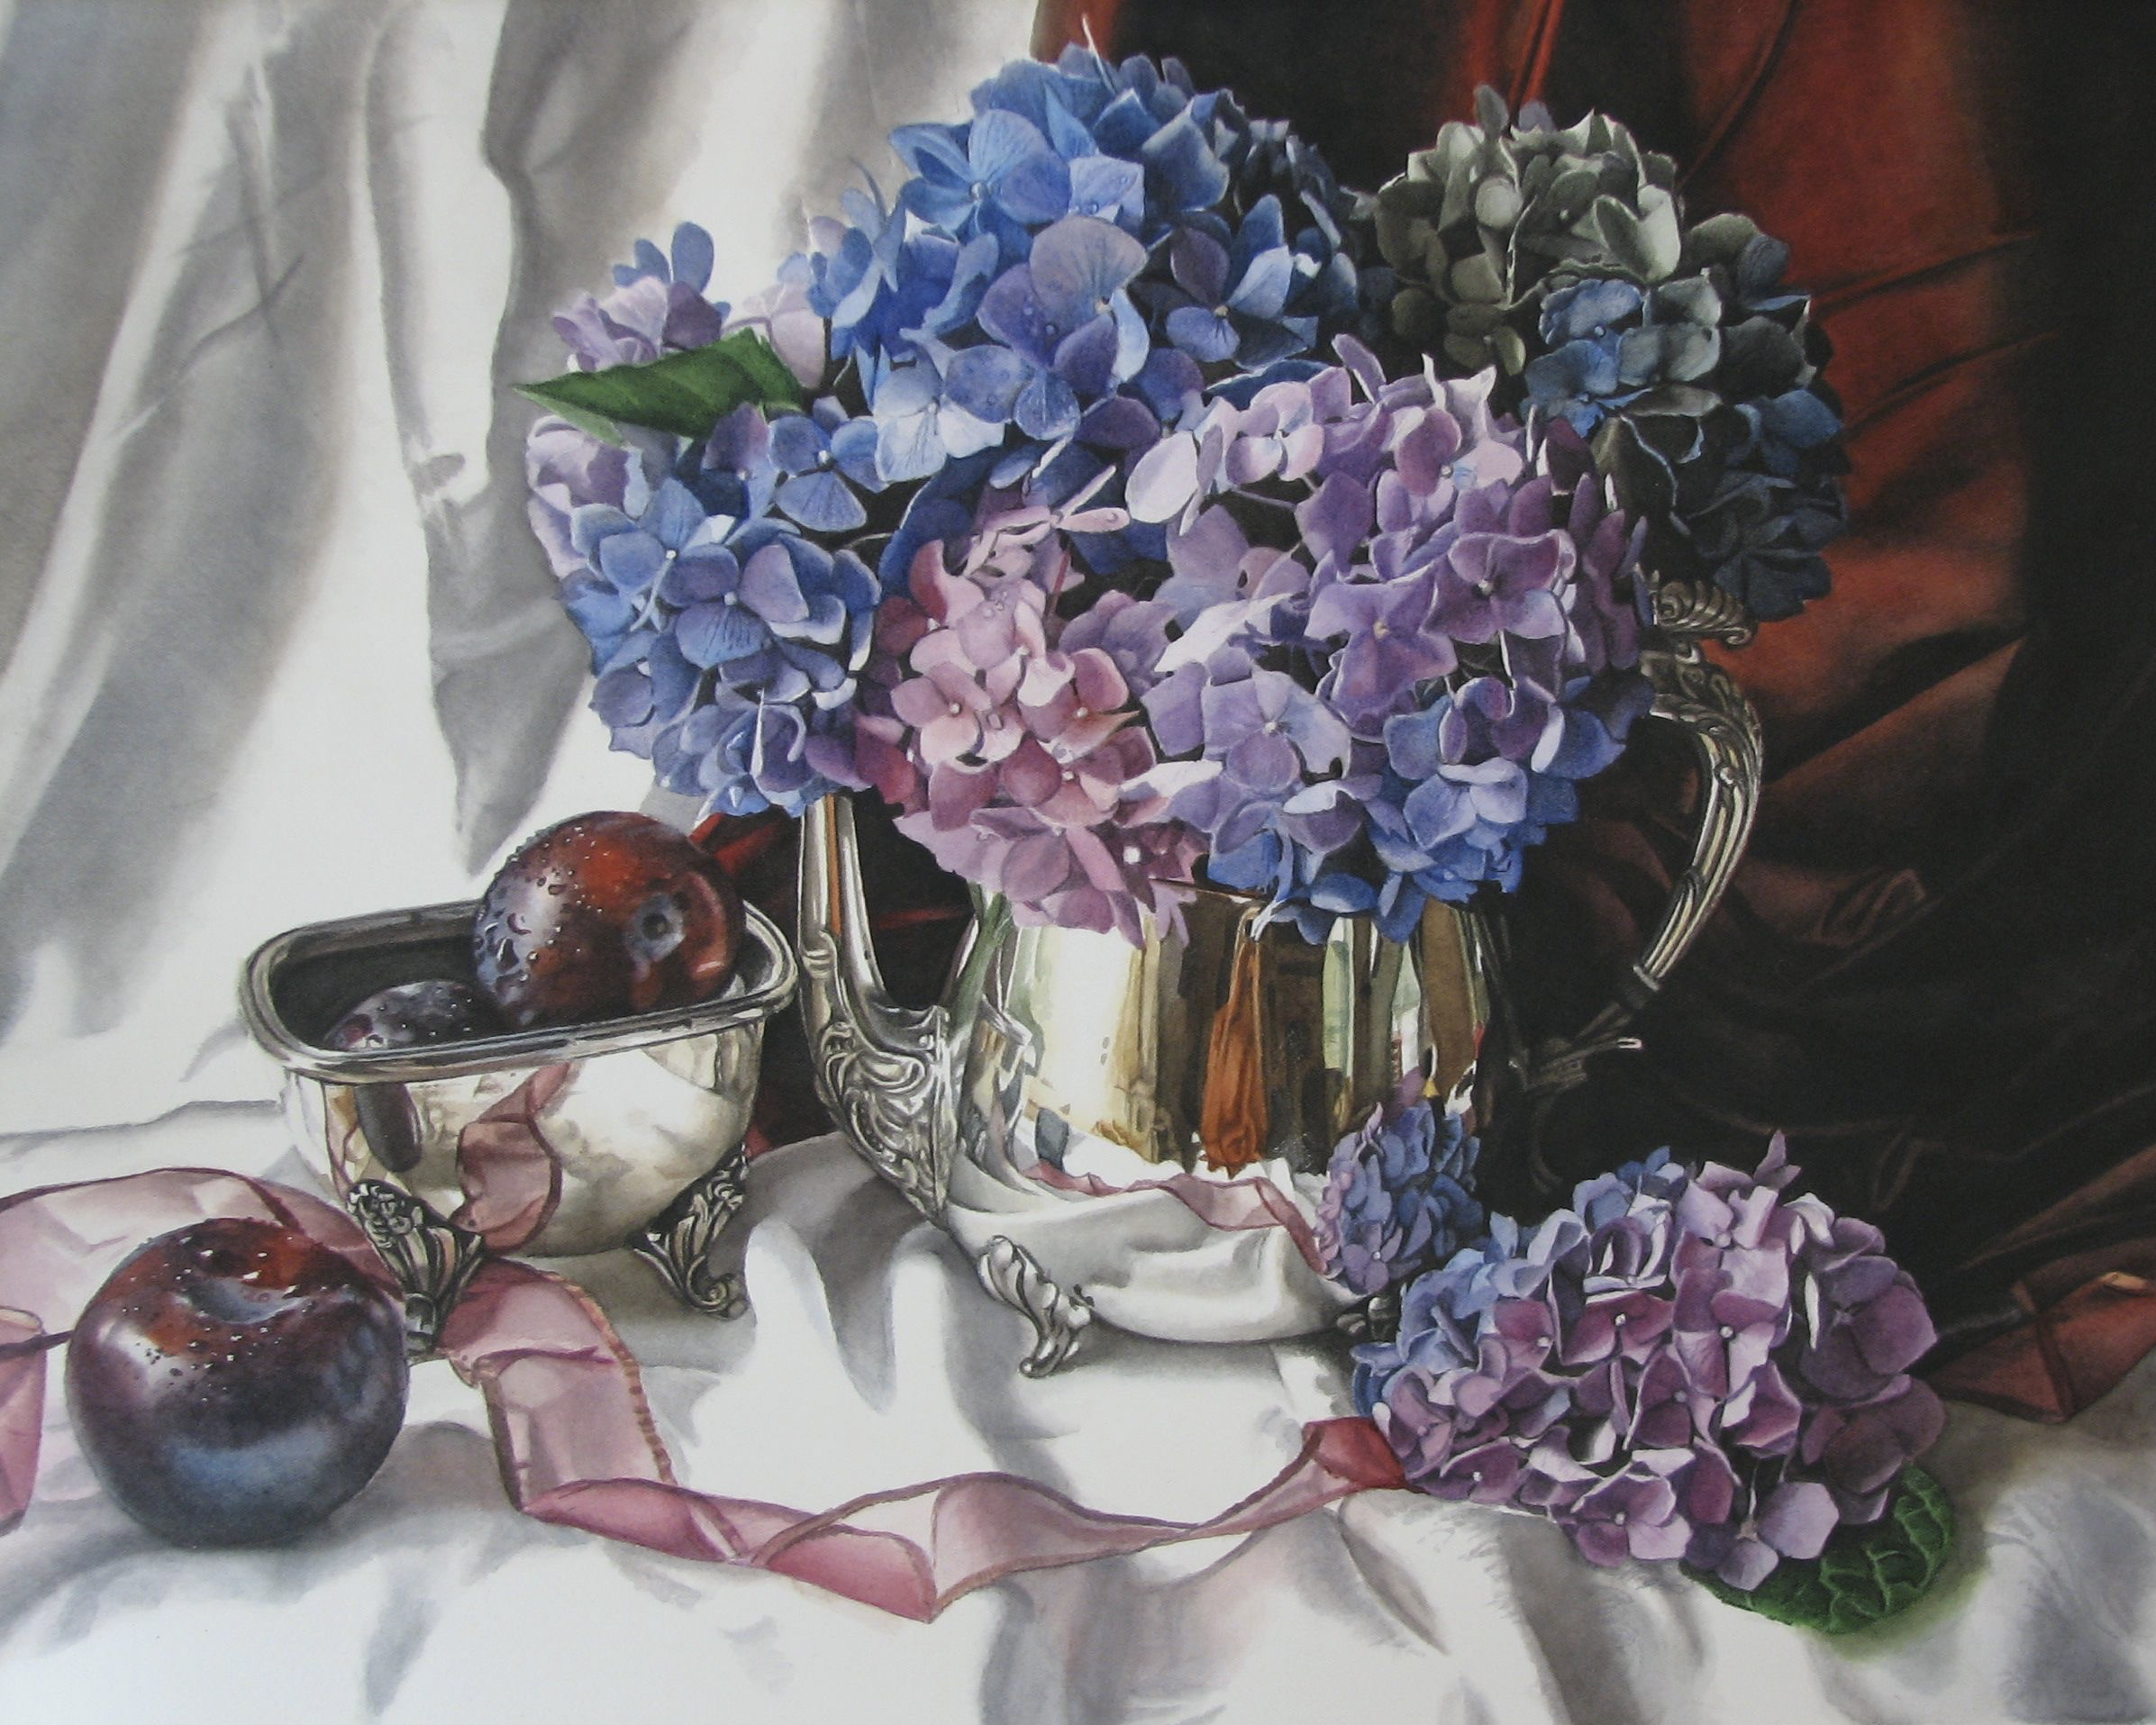 PurpleHydrageas&Plums_18x24_watercolor_2010.jpg